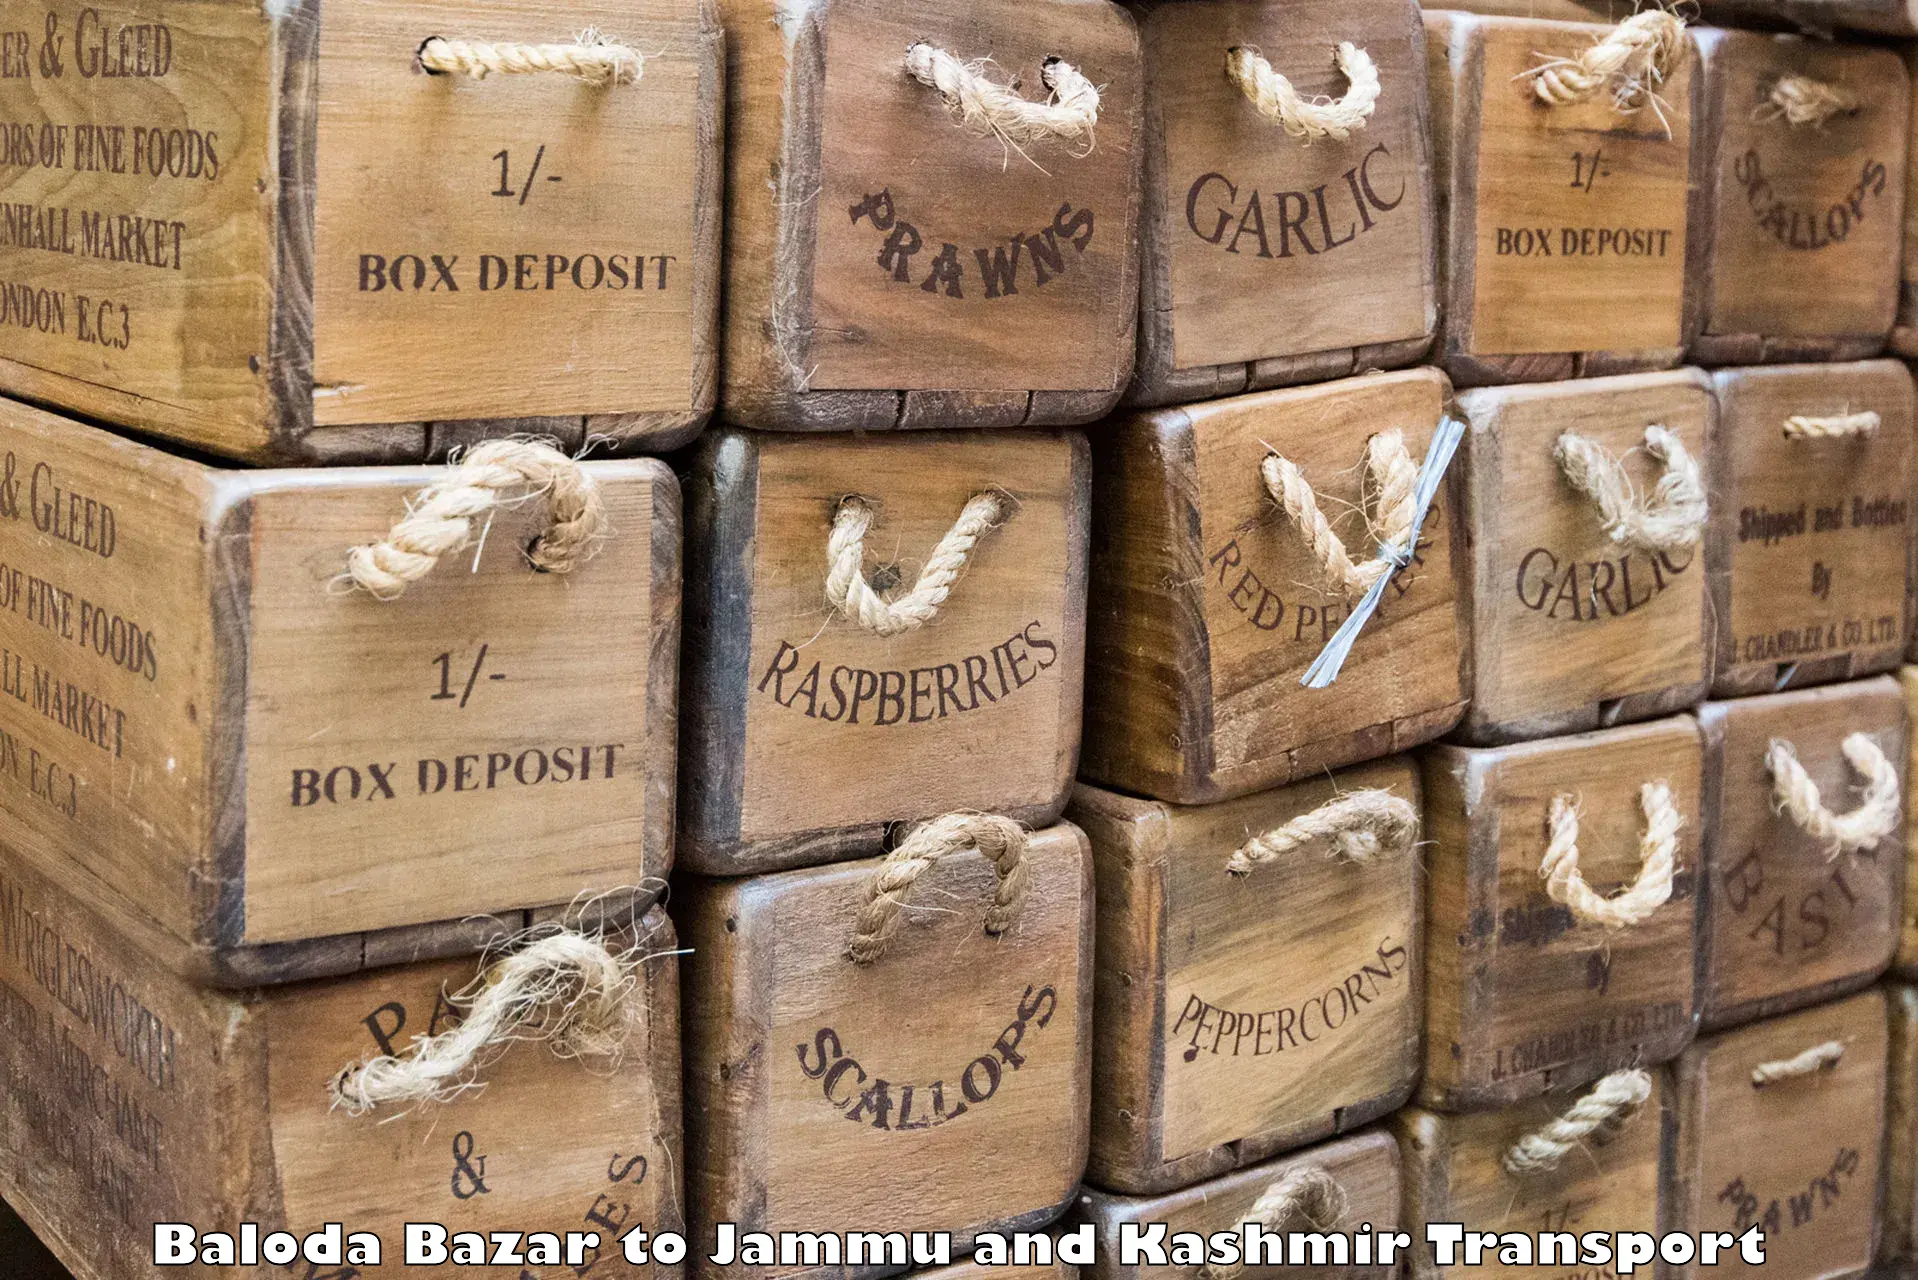 Shipping partner Baloda Bazar to Srinagar Kashmir